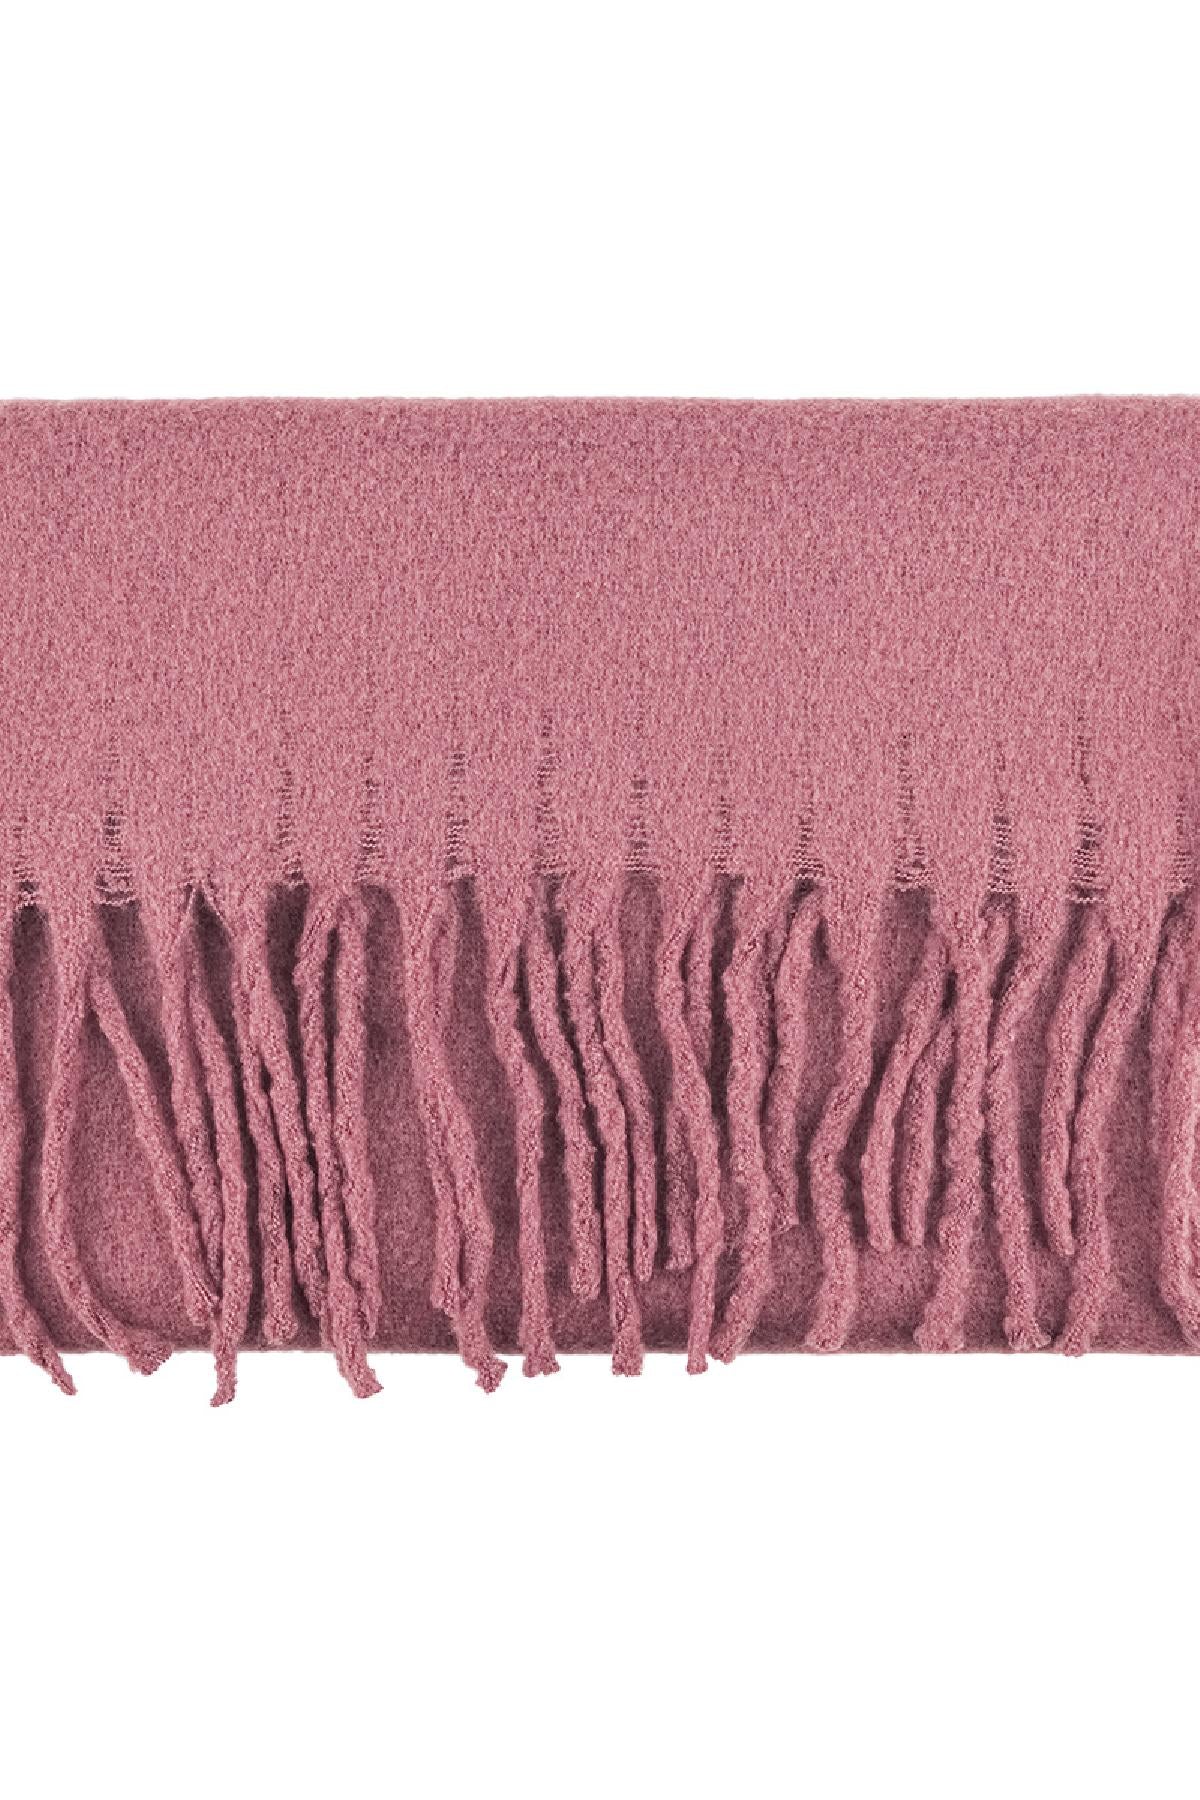 Wintersjaal effen kleur roze detail